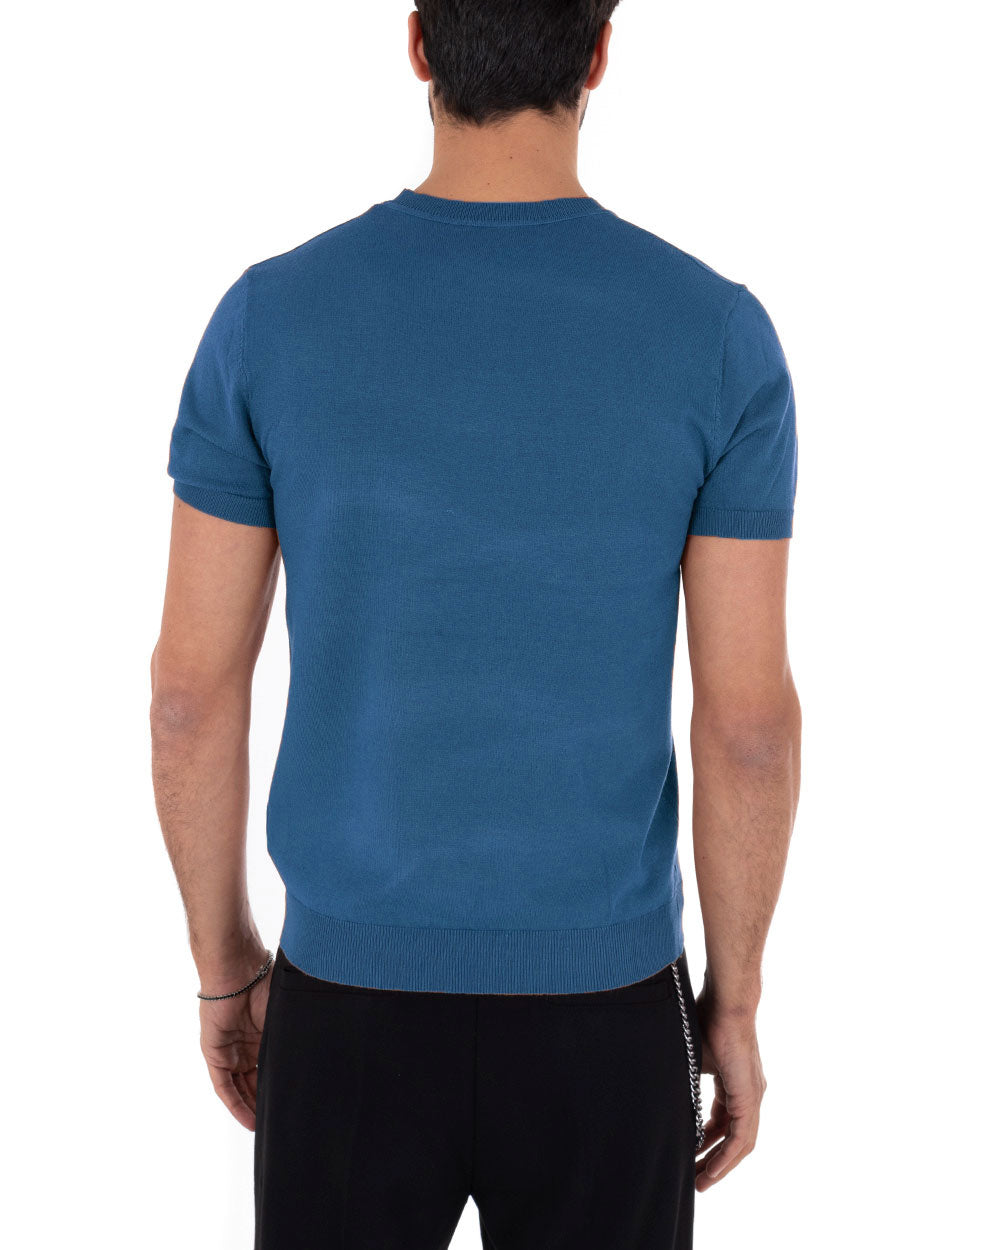 T-Shirt Uomo Maniche Corte Tinta Unita Ottanio Girocollo Filo Casual GIOSAL-TS3075A